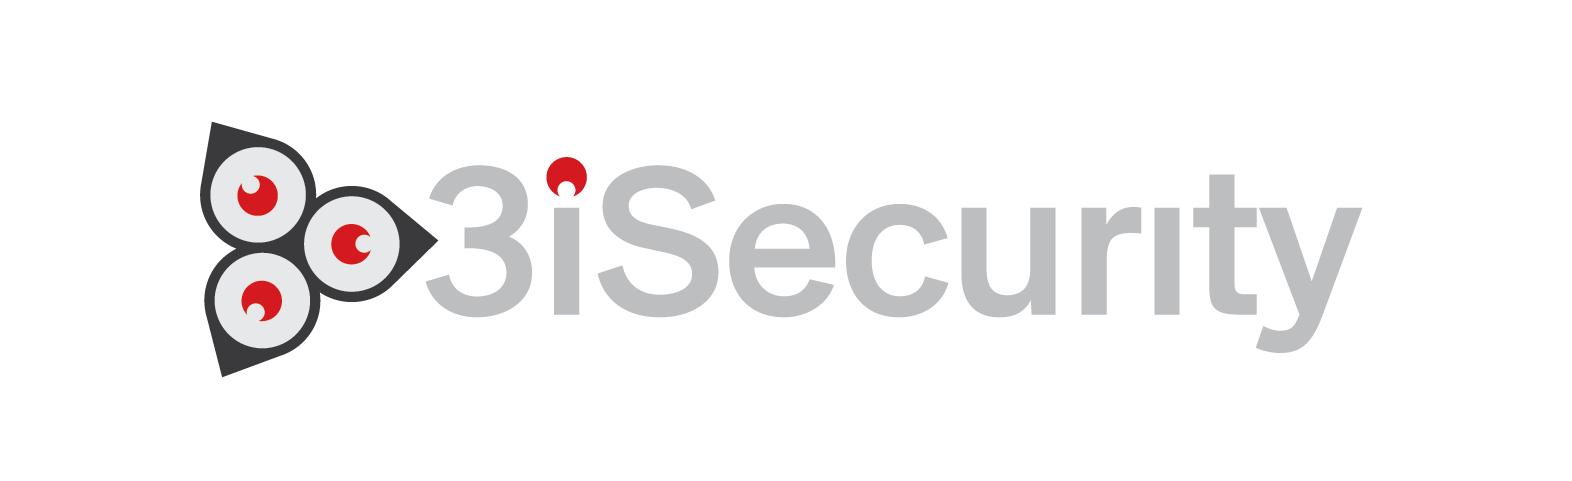 3i Security - Votre sécurité, notre mission